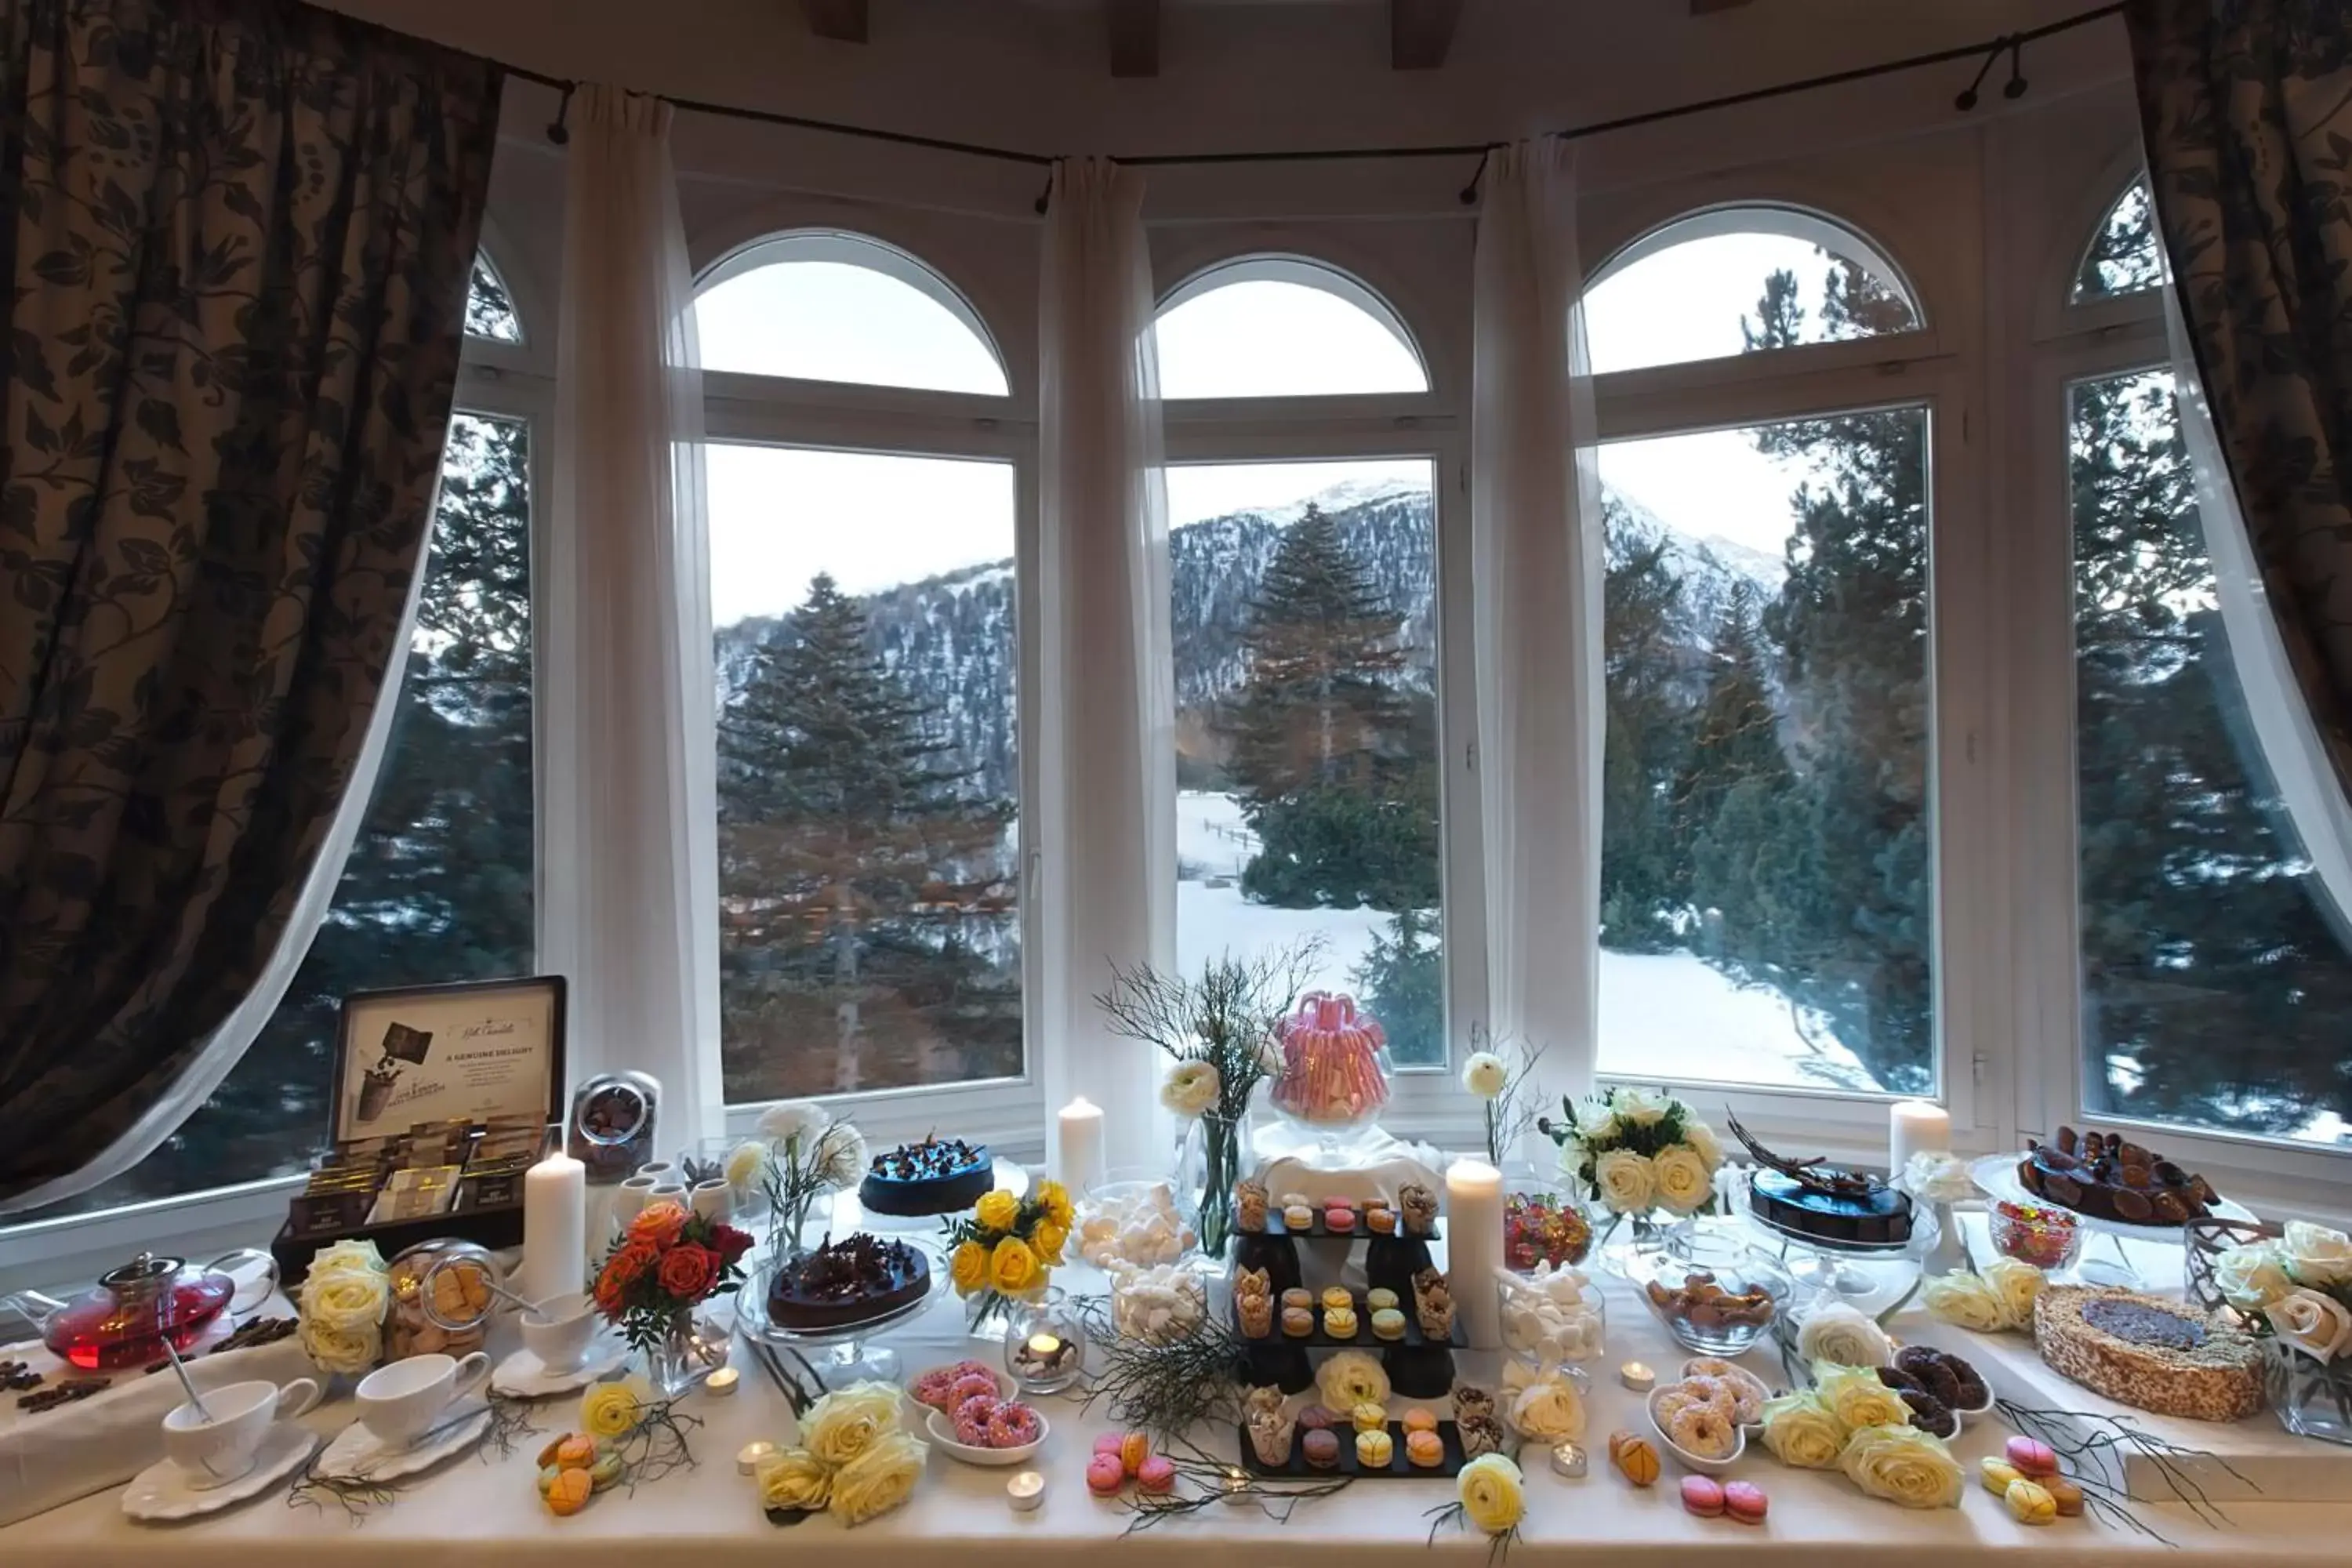 Buffet breakfast in Schloss Hotel & Spa Pontresina